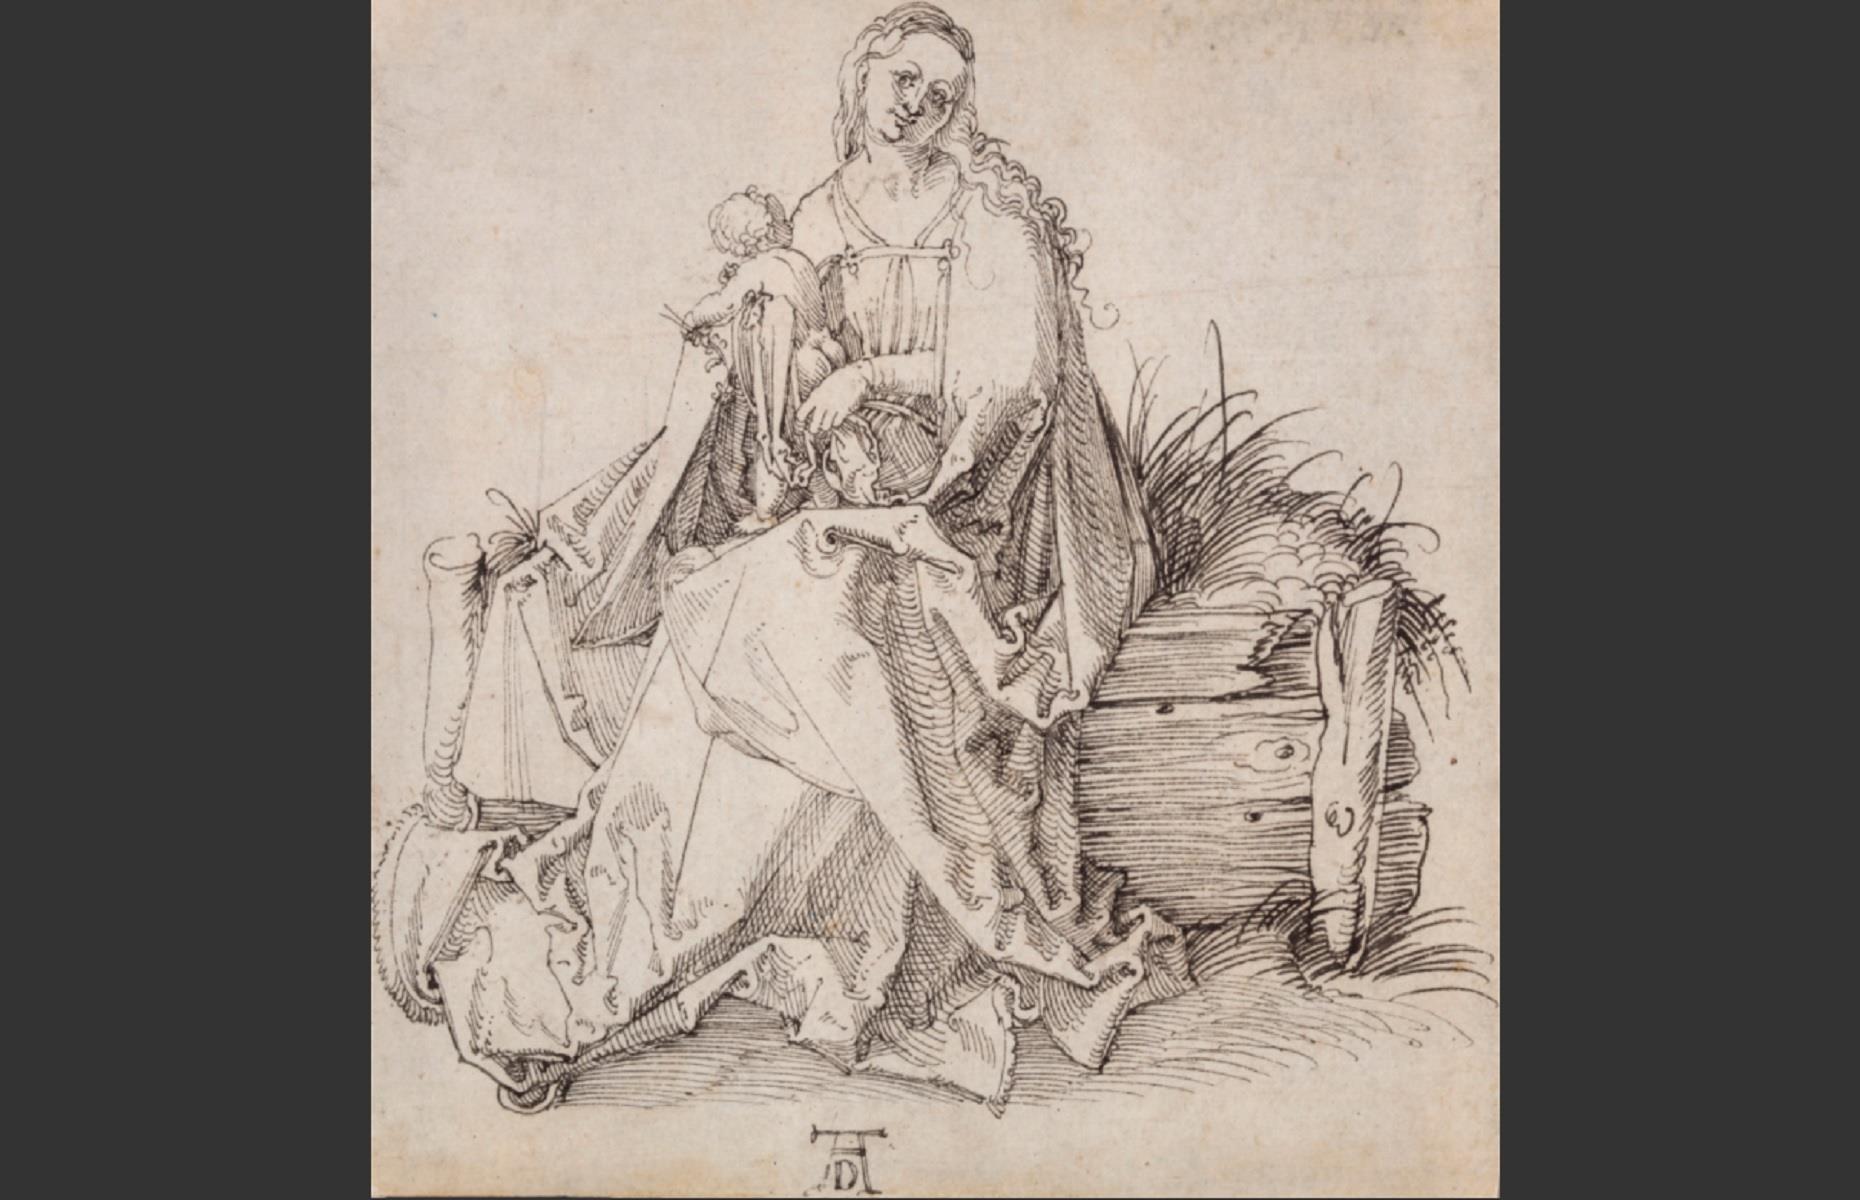 The Albrecht Dürer drawing